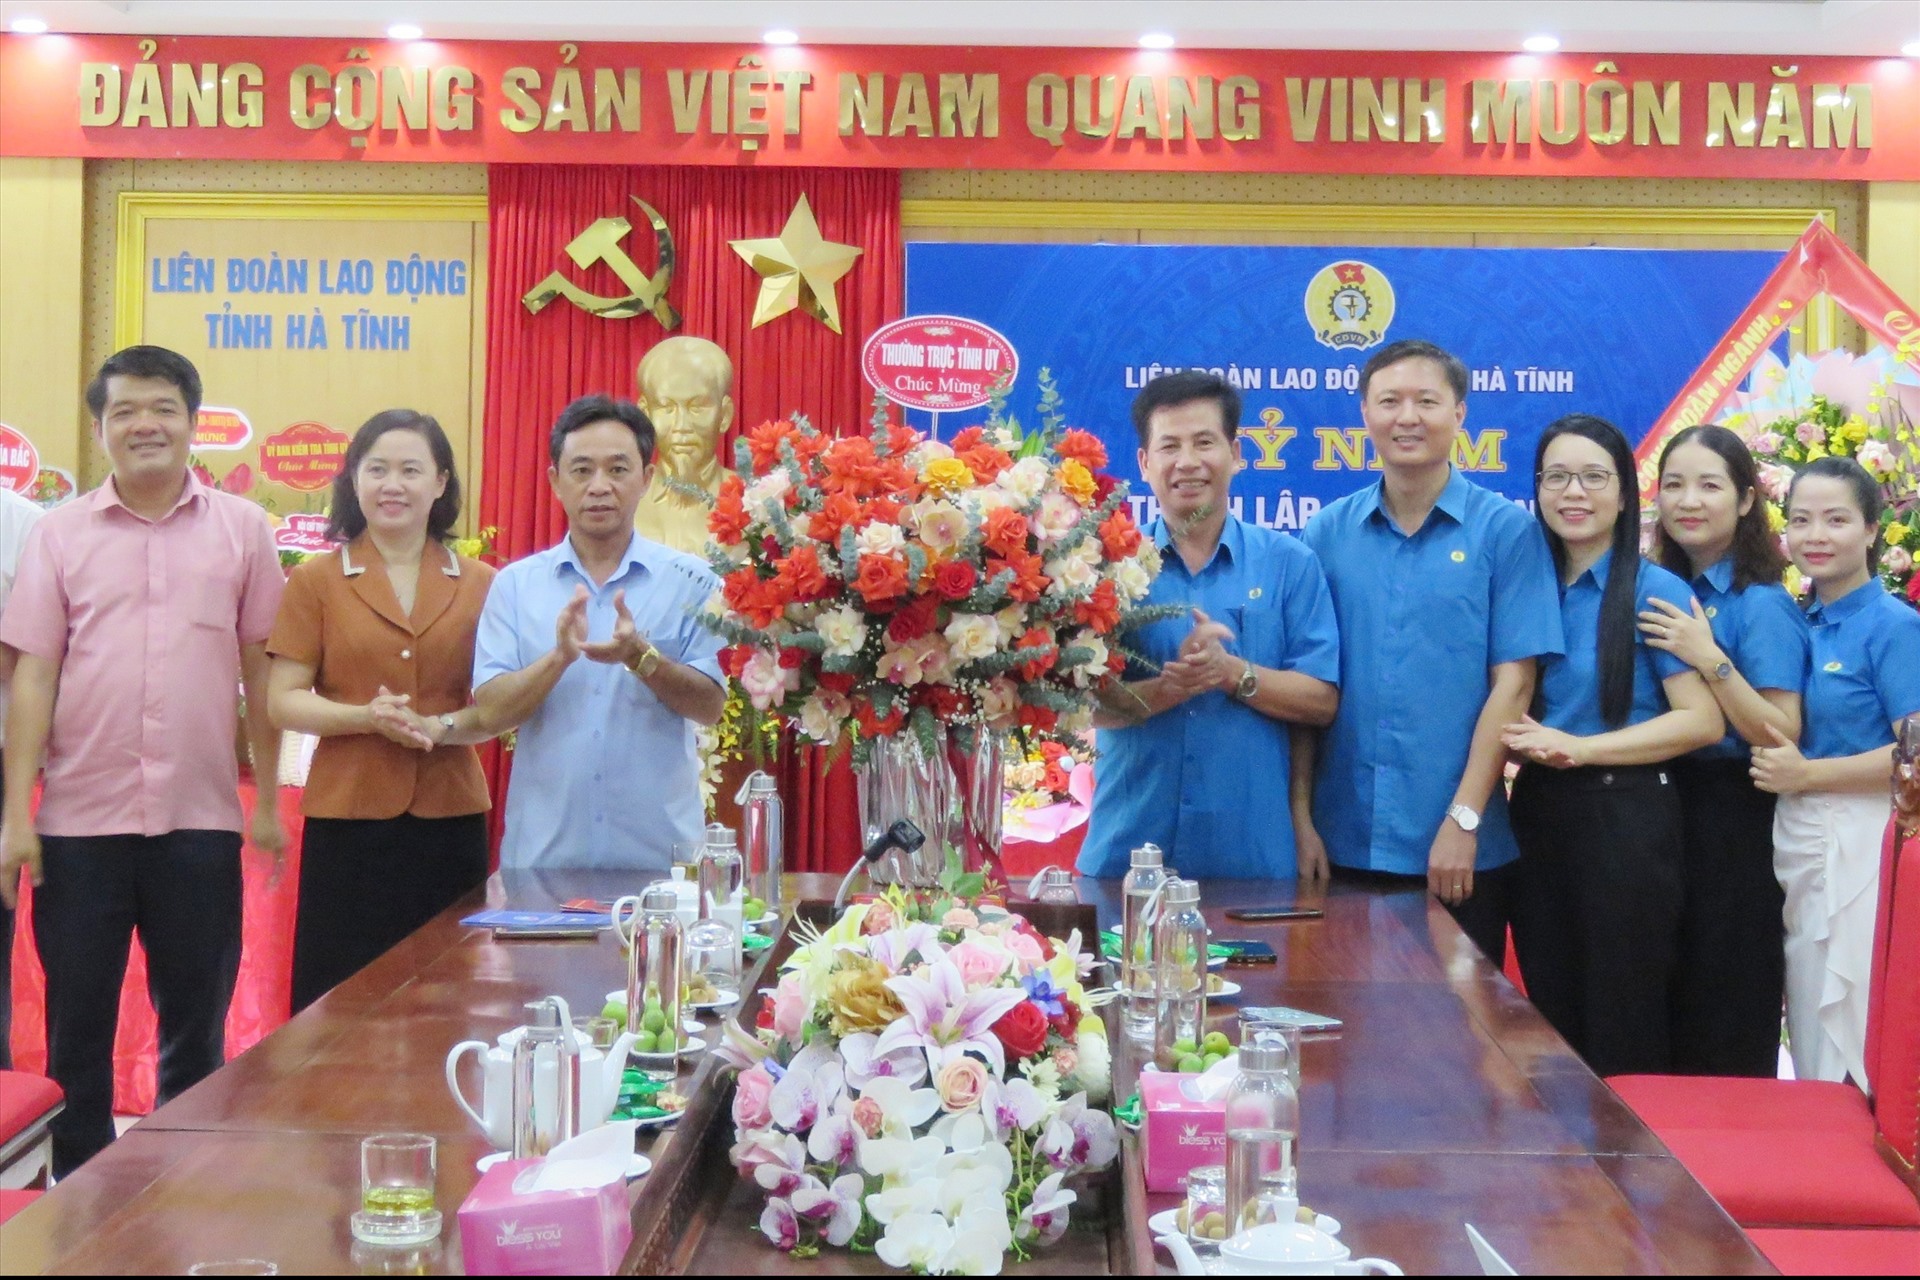 Lãnh đạo tỉnh Hà Tĩnh chúc mừng Công đoàn Hà Tĩnh nhân dịp 94 năm thành lập Công đoàn Việt Nam. Ảnh: Công đoàn.